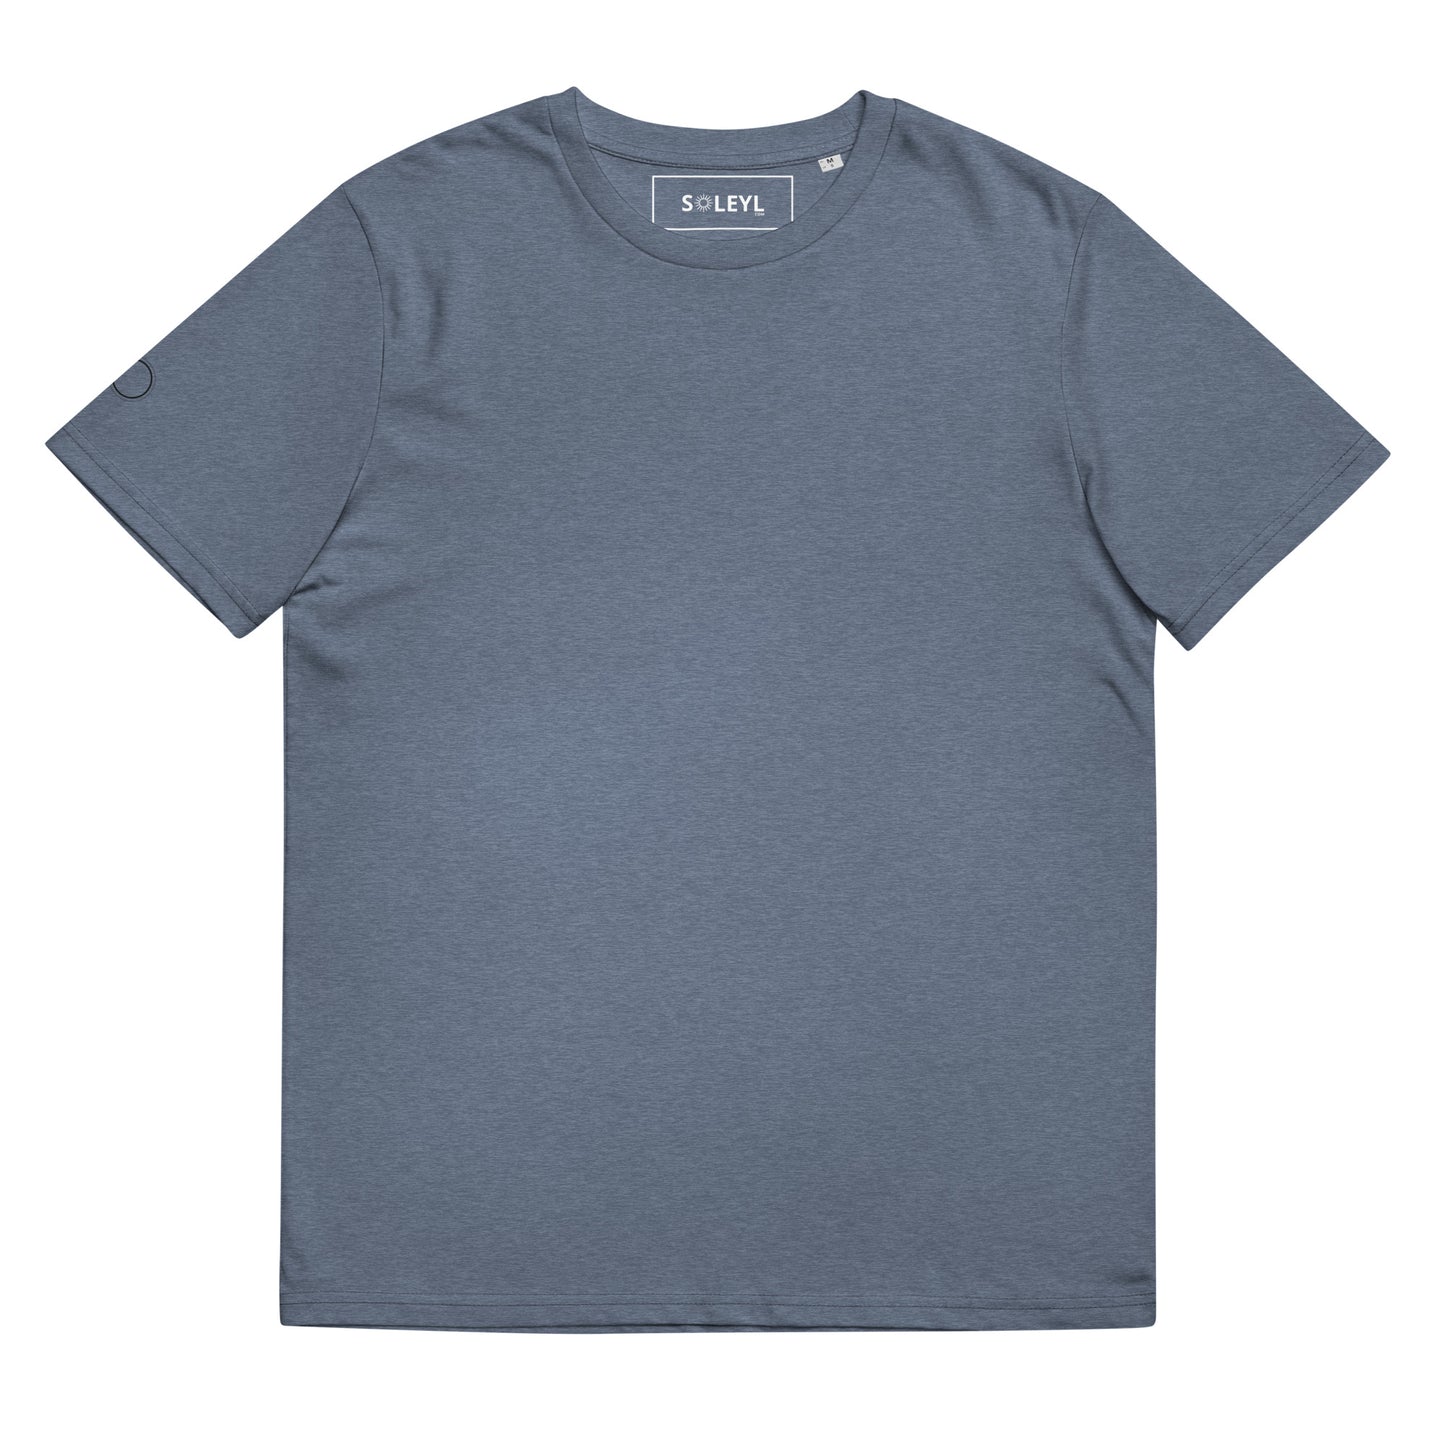 Full Plain - Premium Unisex organic cotton t-shirt